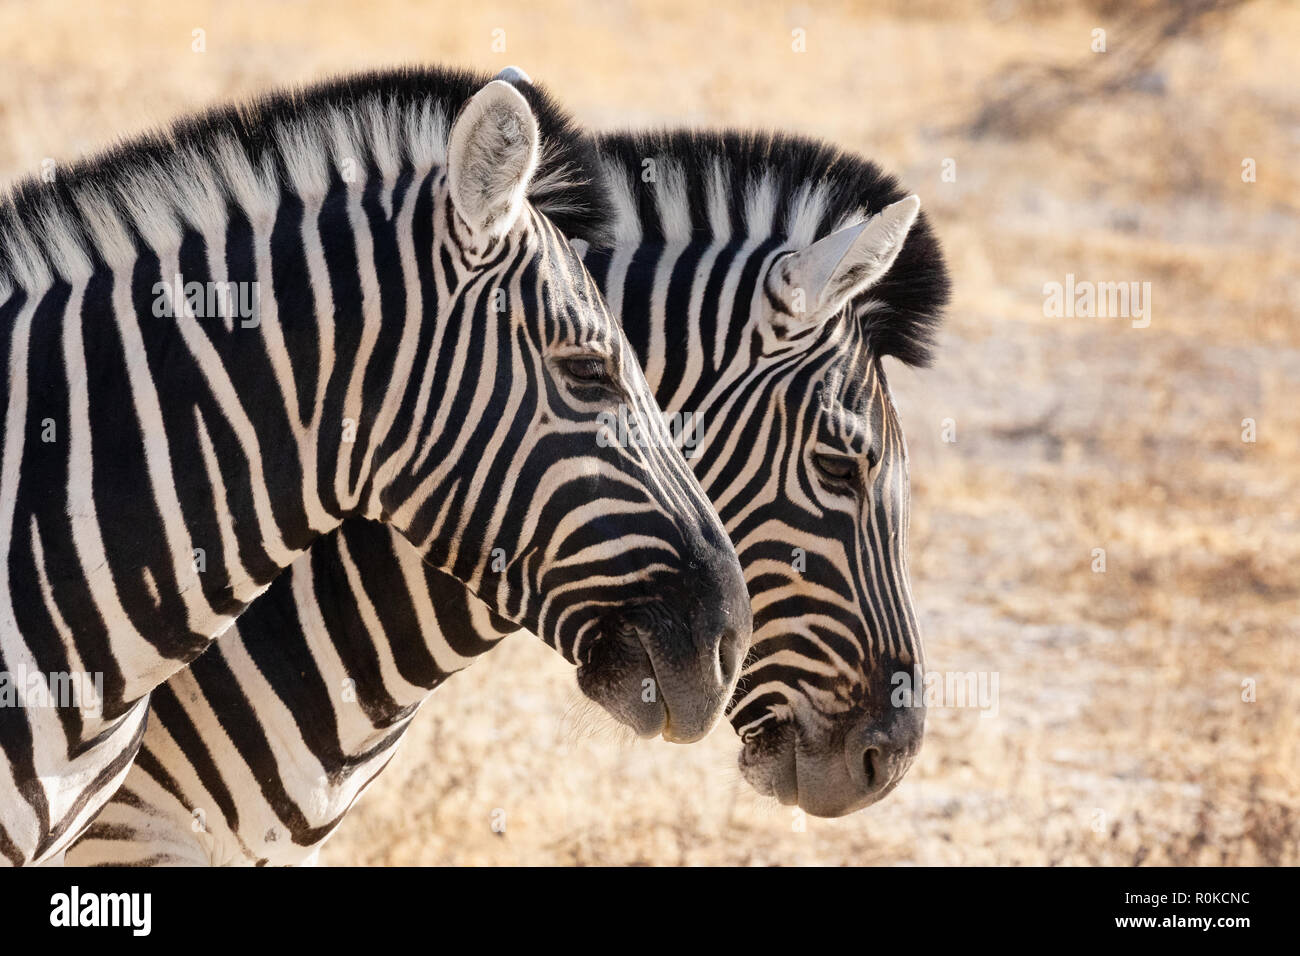 Zebra Afrique - gros plan des chefs de deux communes adultes ( Zebra Zebra Burchell zèbre Des Plaines, Equus quagga, ), Etosha National Park, Namibie, Afrique du Sud Banque D'Images